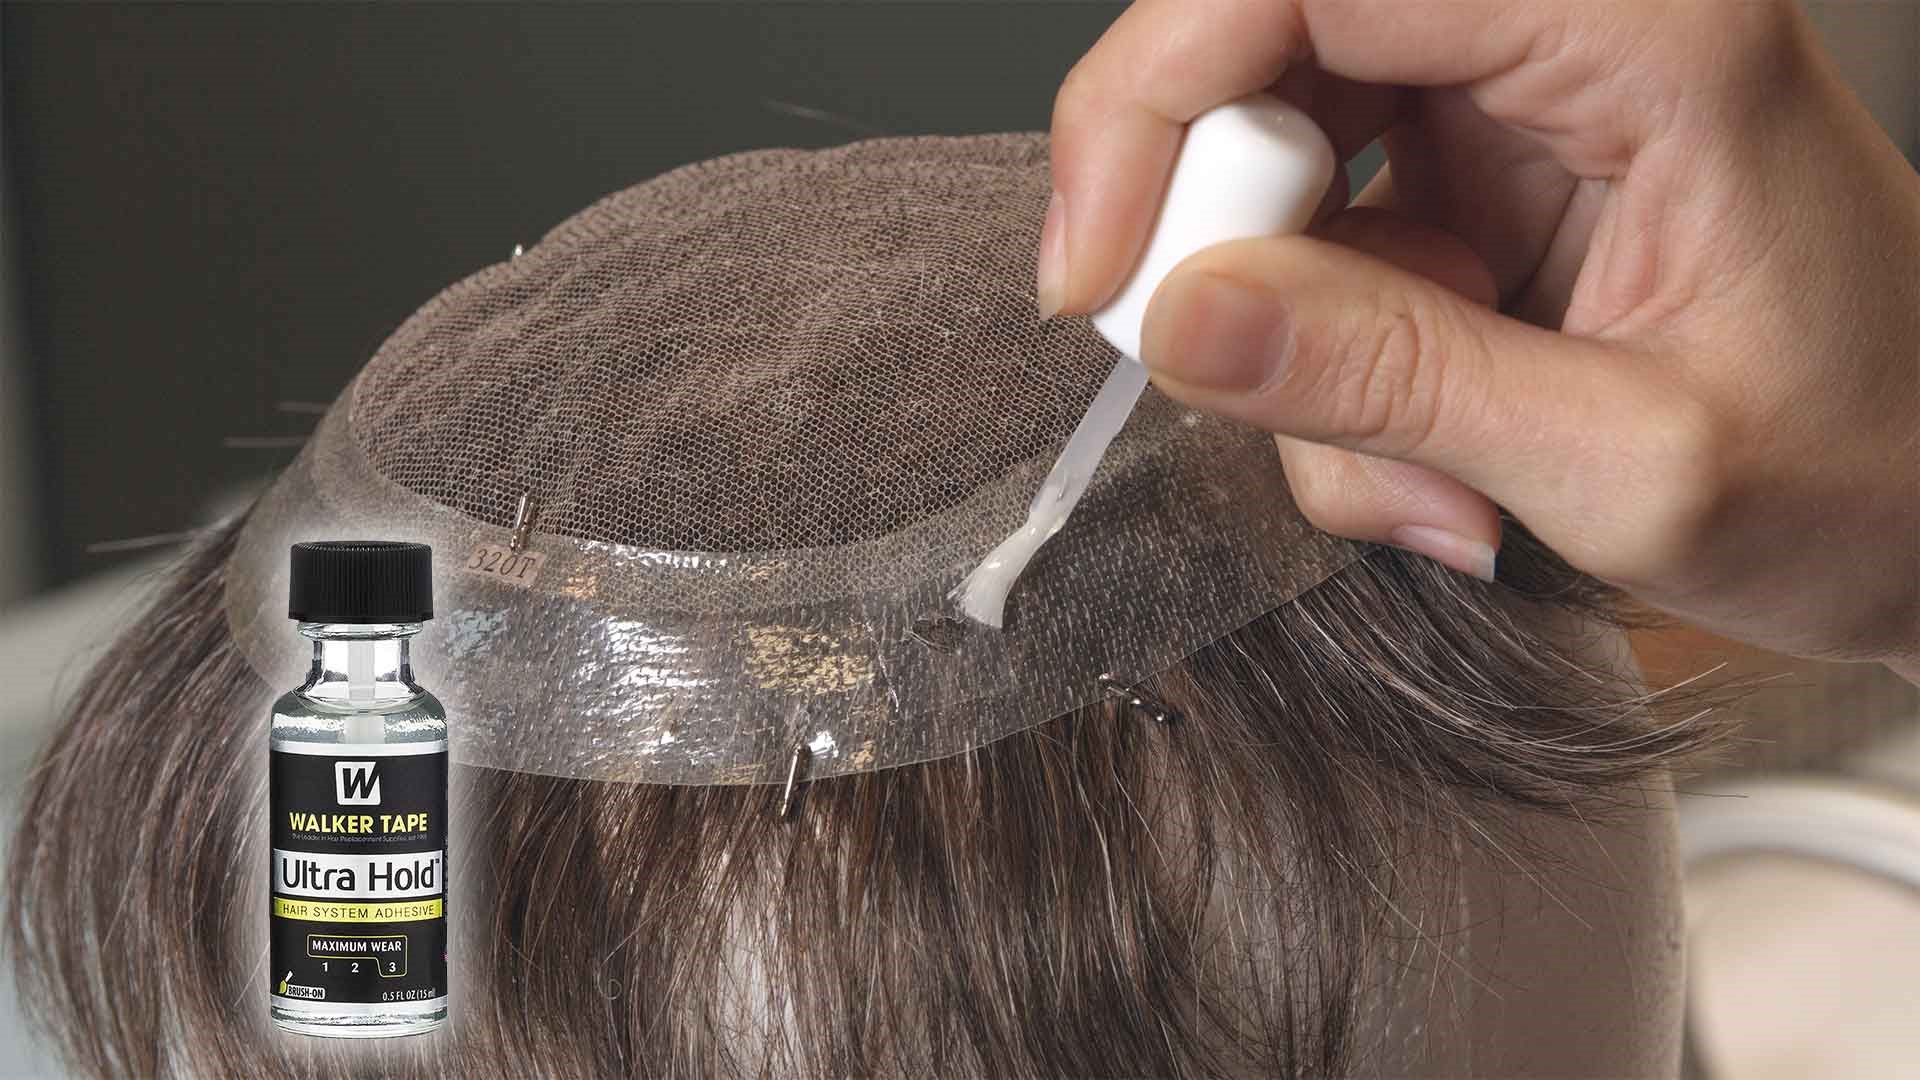 Protez Saç Bandı Nasıl Temizlenir